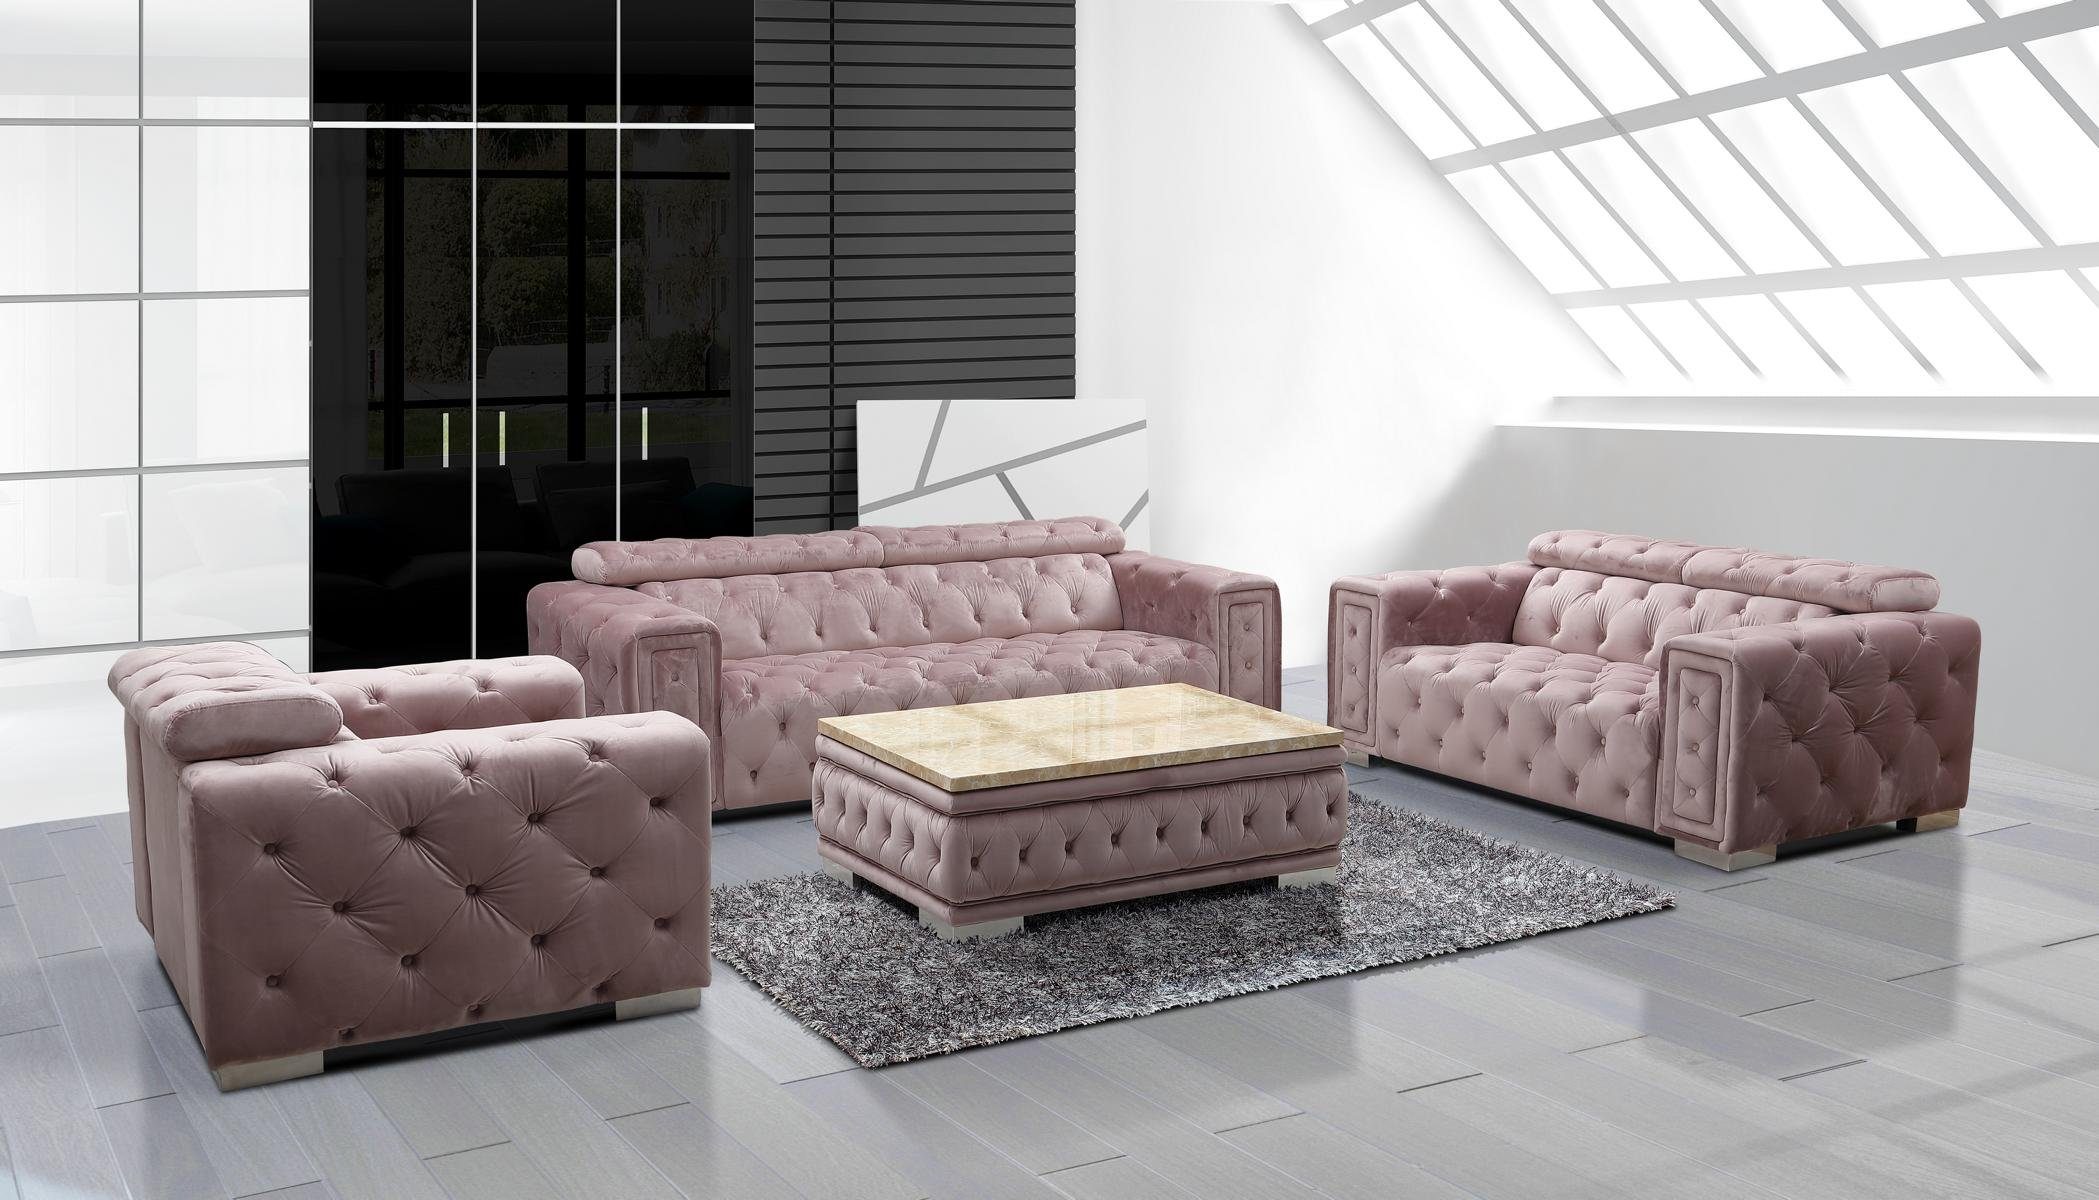 JVmoebel 3-Sitzer Couch Set Garnitur Polster Design Chesterfield Sofagarnitur, Made in Europe